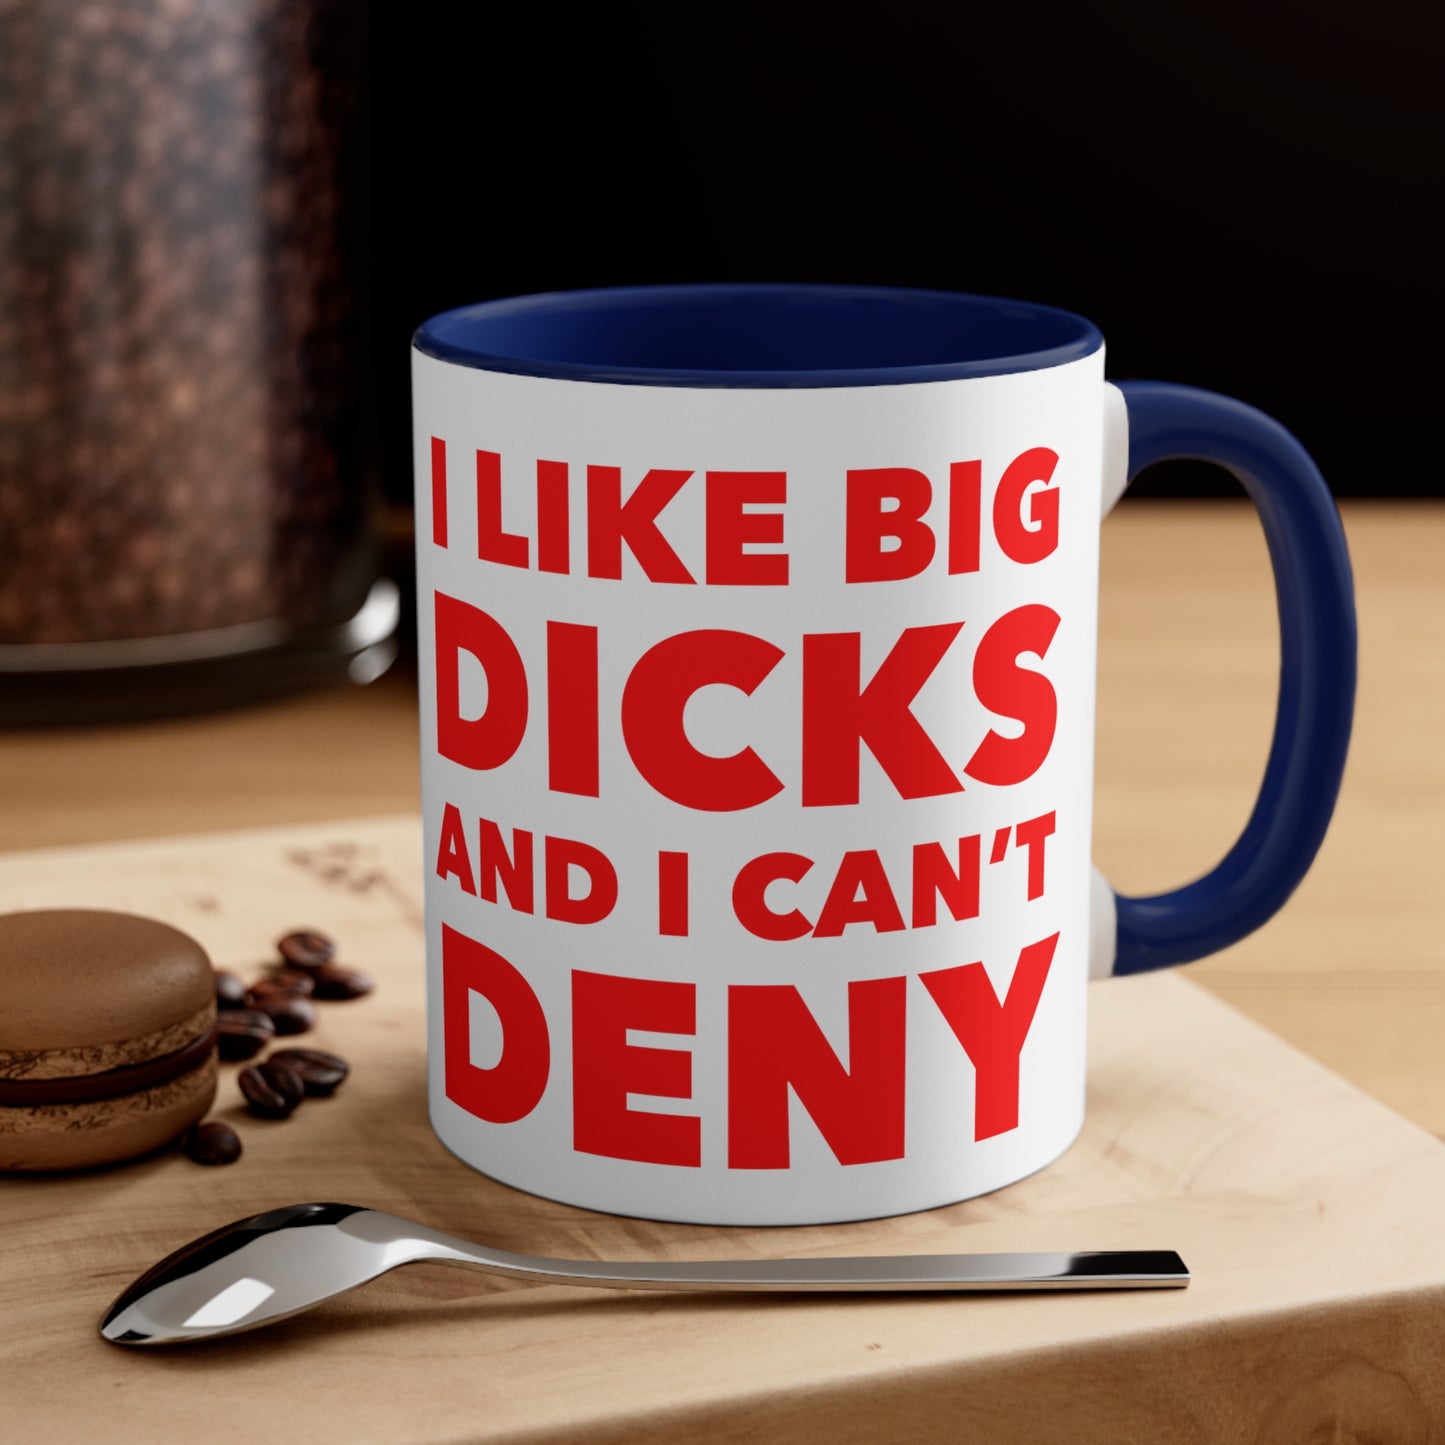 I Like Big Dicks and I Can't Deny - Coffee Mug